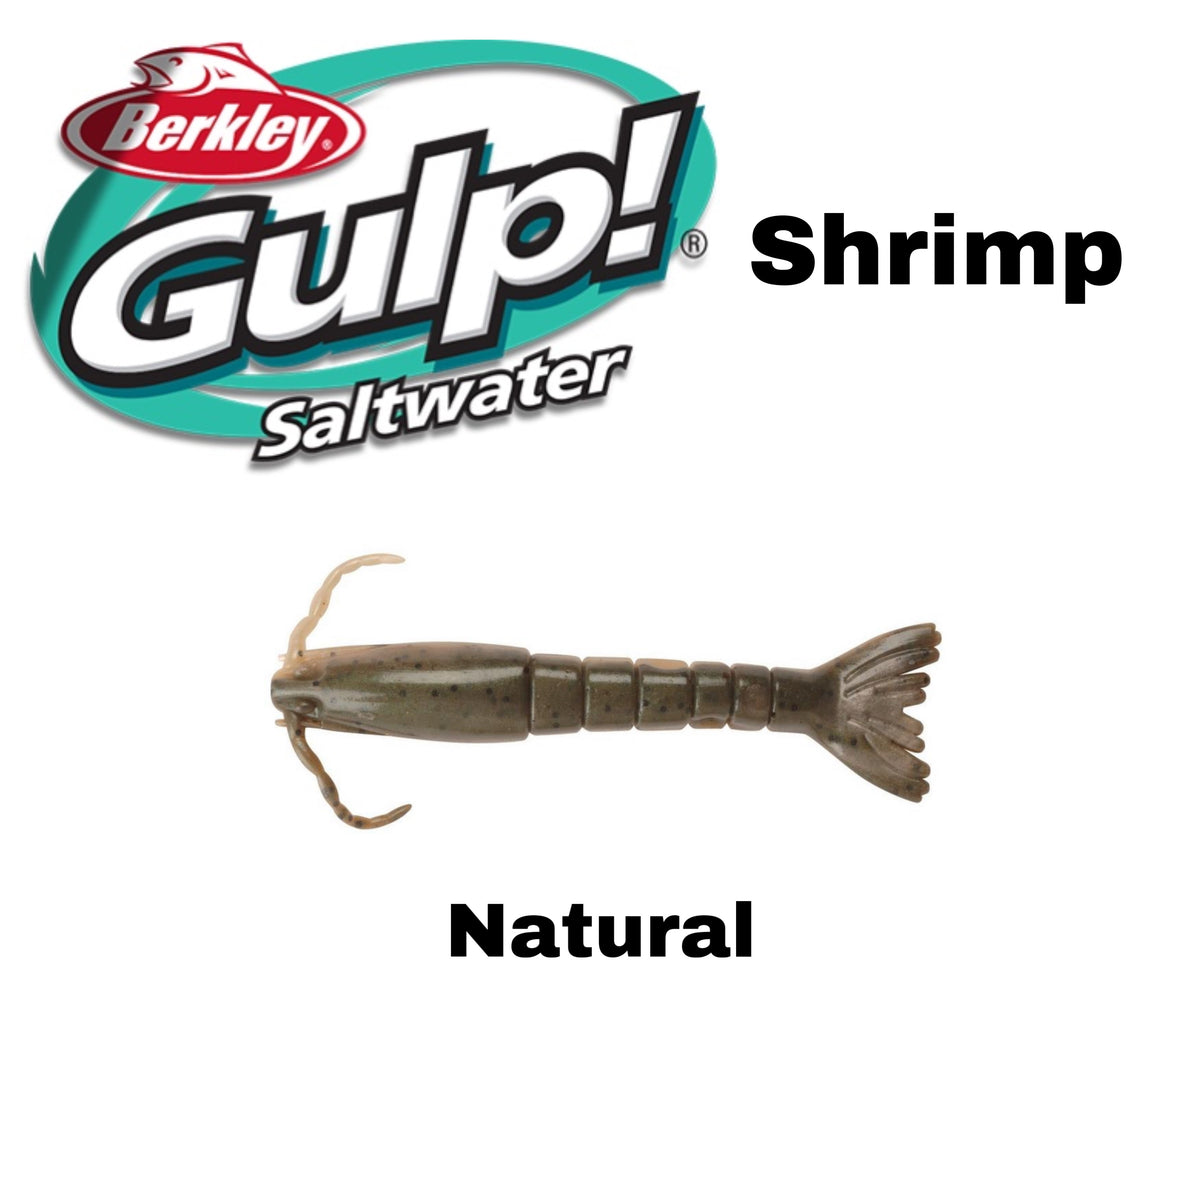 Berkley Gulp Saltwater Ghost Shrimp Bait, 3-Inch